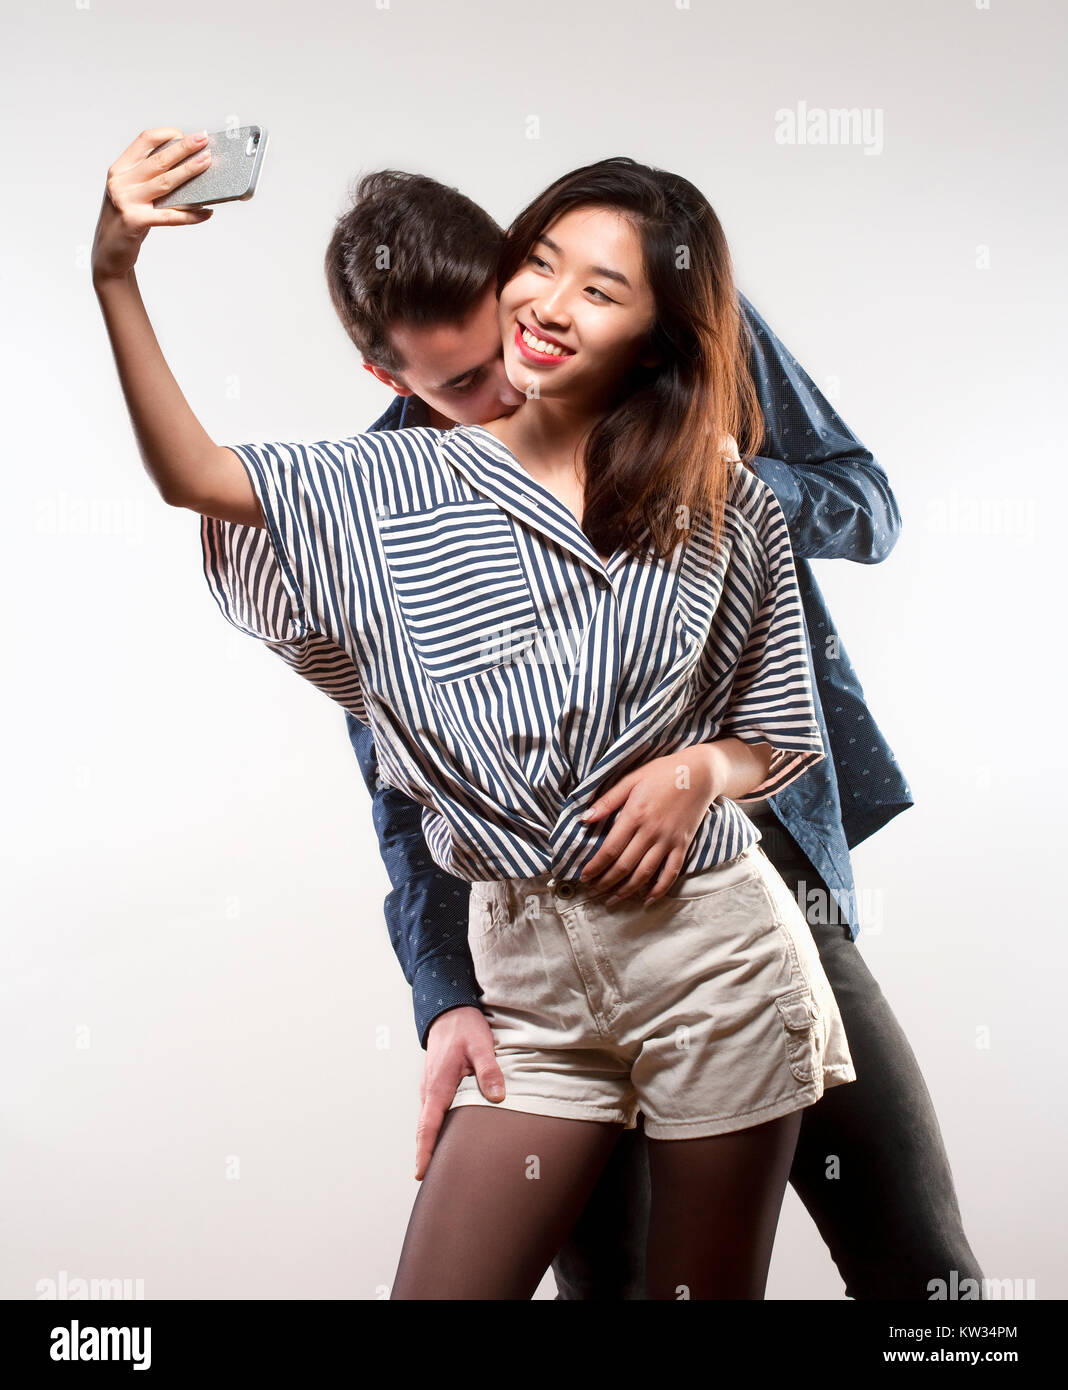 Junges Mädchen mit einem selfie Während geküsst zu werden. Stockfoto